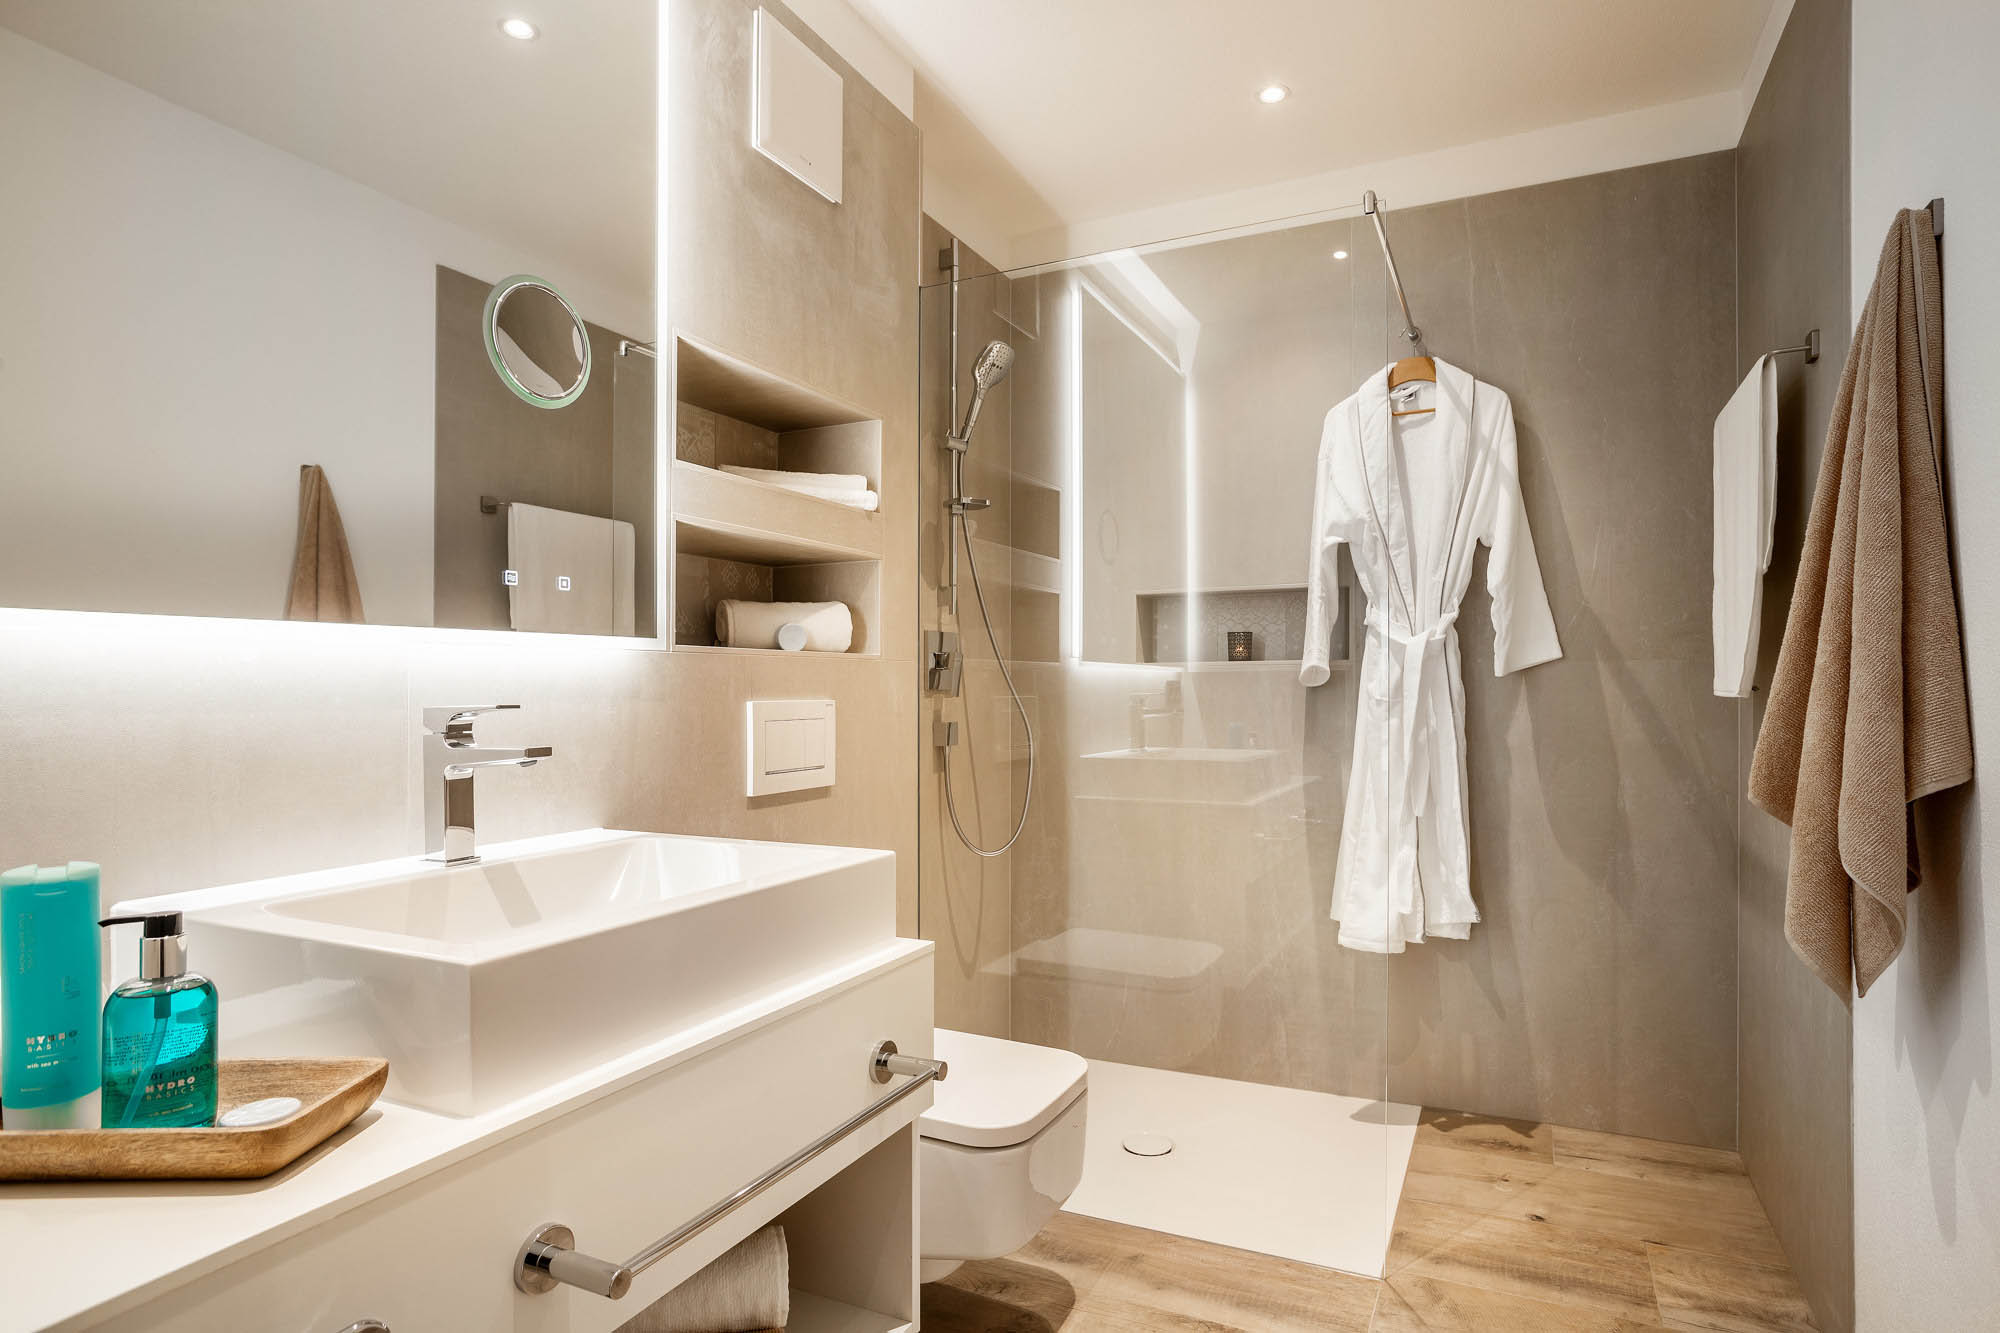 Das Badezimmer im Comfort Apartment ist helen grautönen und weiß gestaltet. die Dusche ist ebenerdig und behindertengerecht.